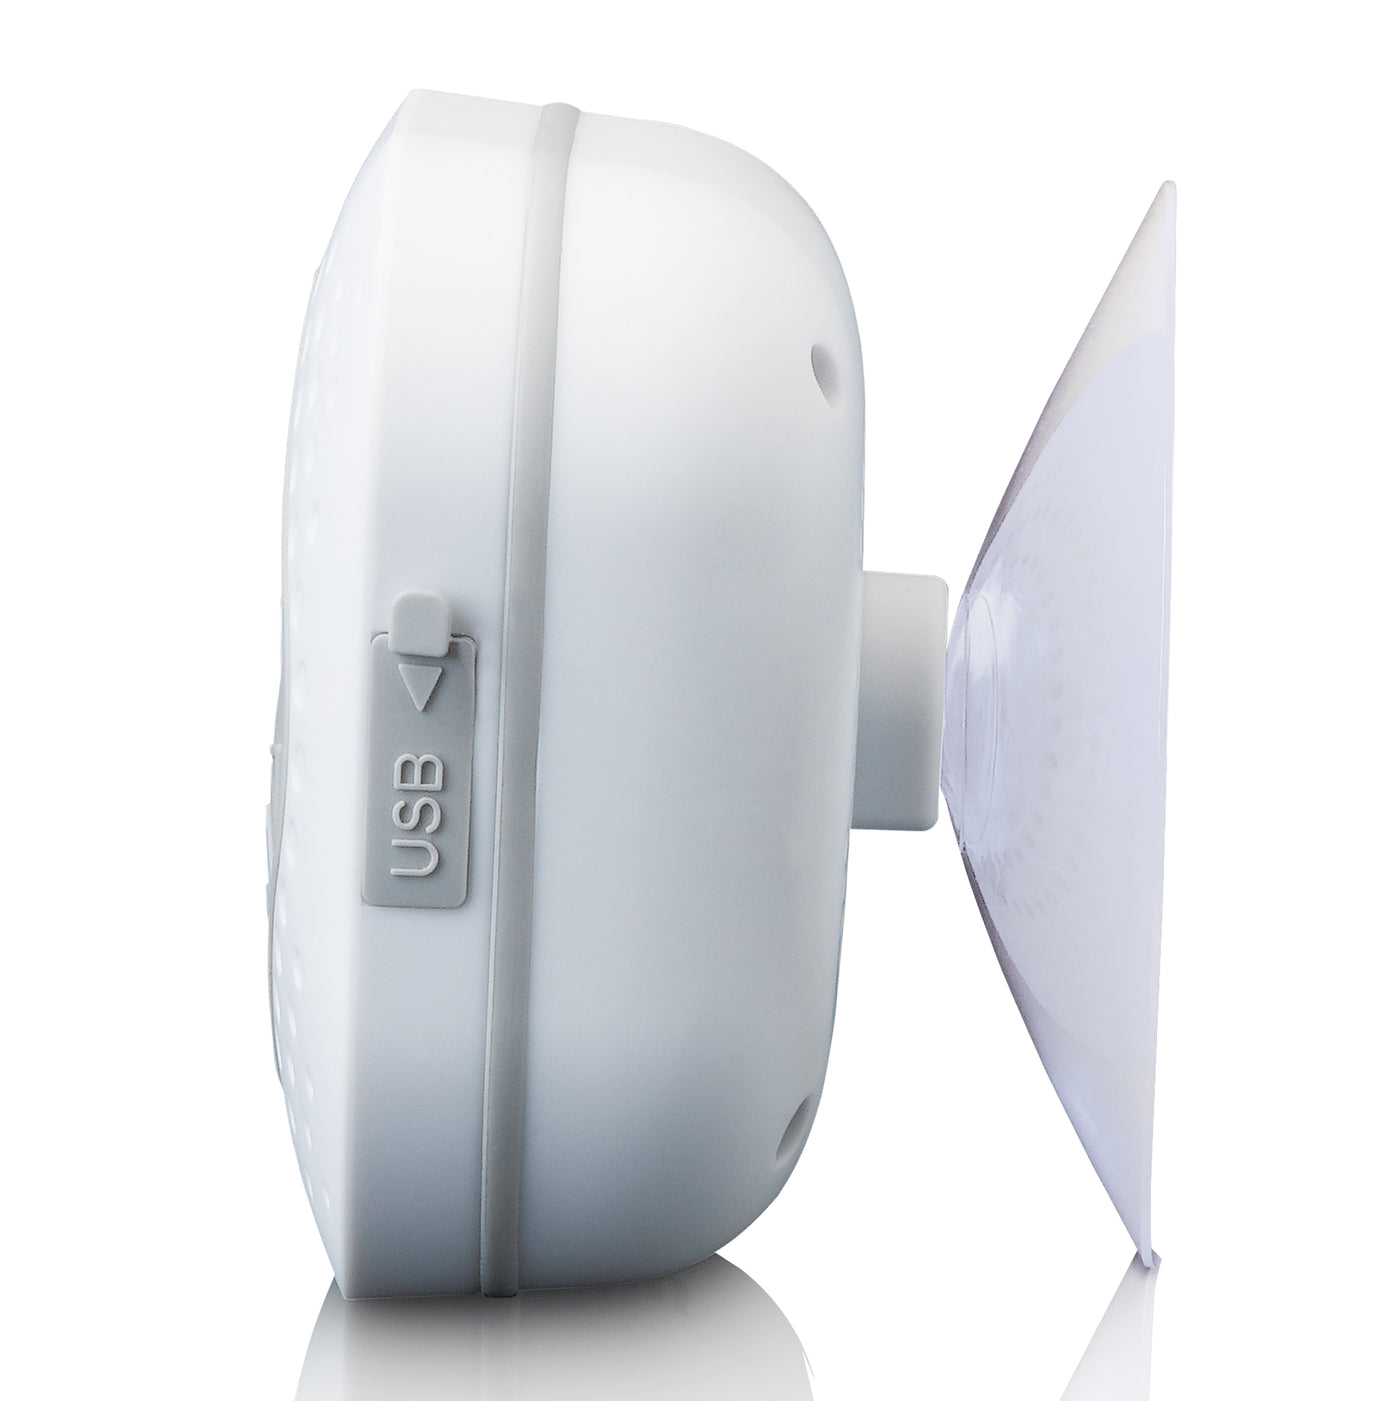 LENCO BAR-013WH - Wodoodporne radio FM do łazienki i kuchni z Bluetooth® i timerem - Białe